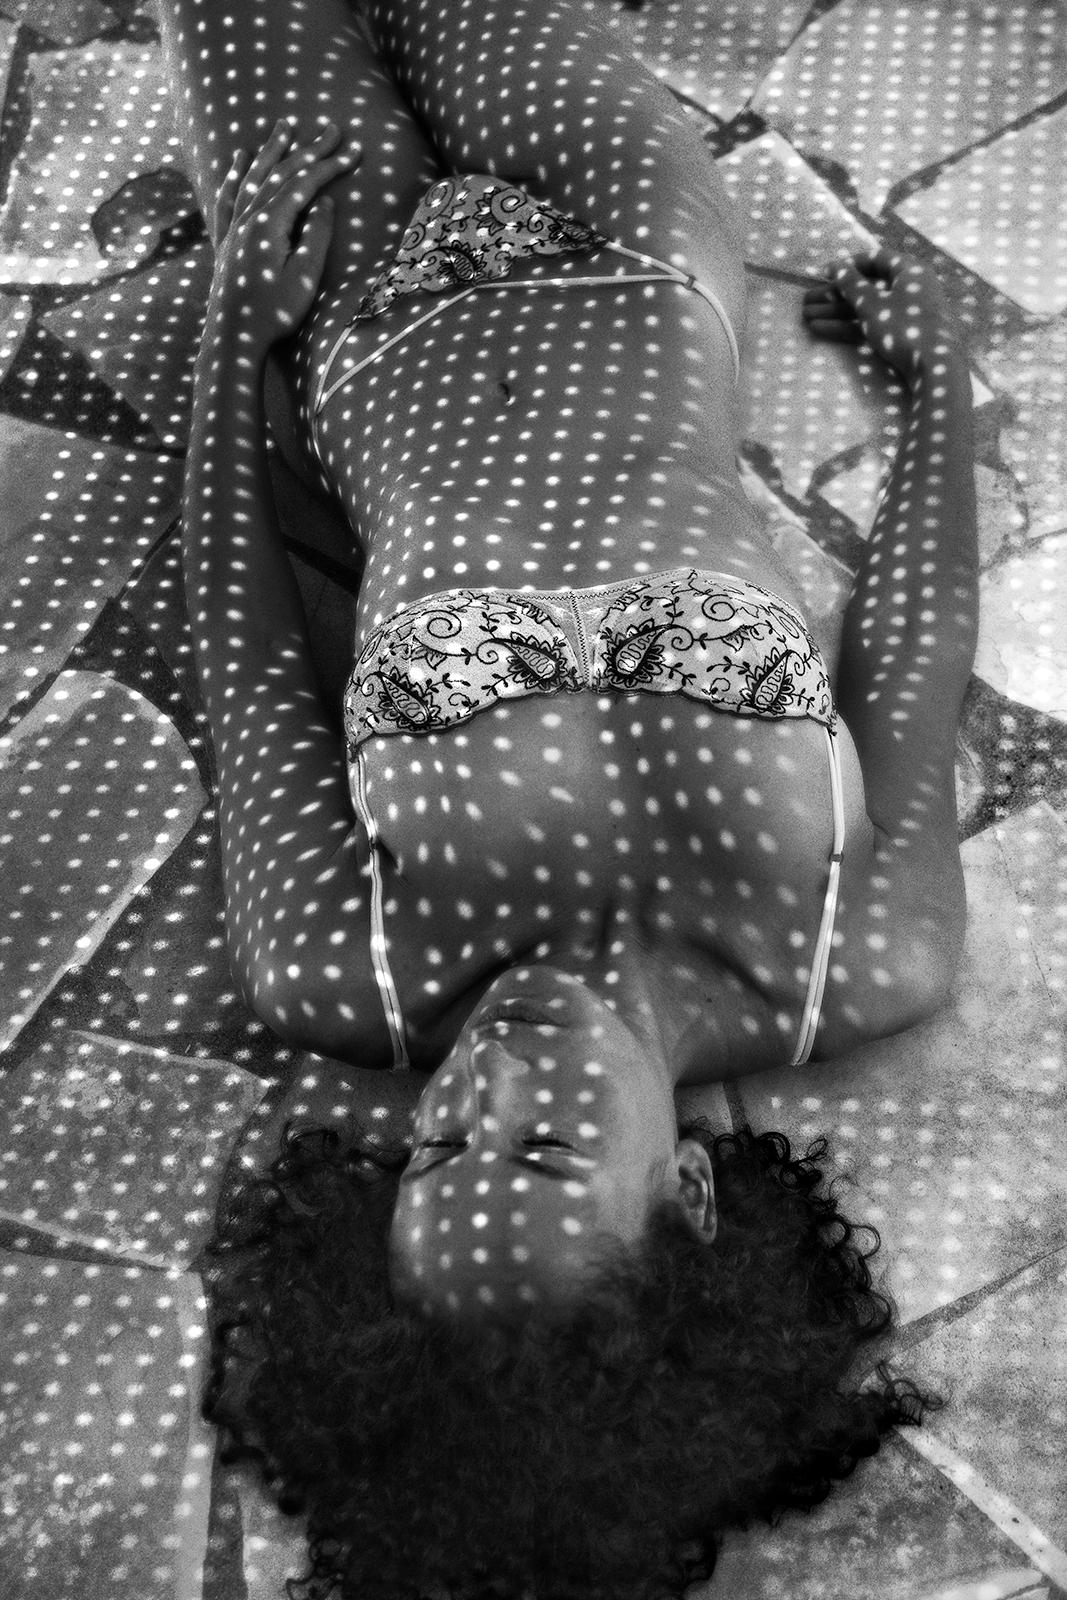 Sonnenflecken – signierter Kunstdruck in limitierter Auflage, schwarz-weißes Foto,Sexuell, zeitgenössisch (Schwarz), Black and White Photograph, von Ian Sanderson